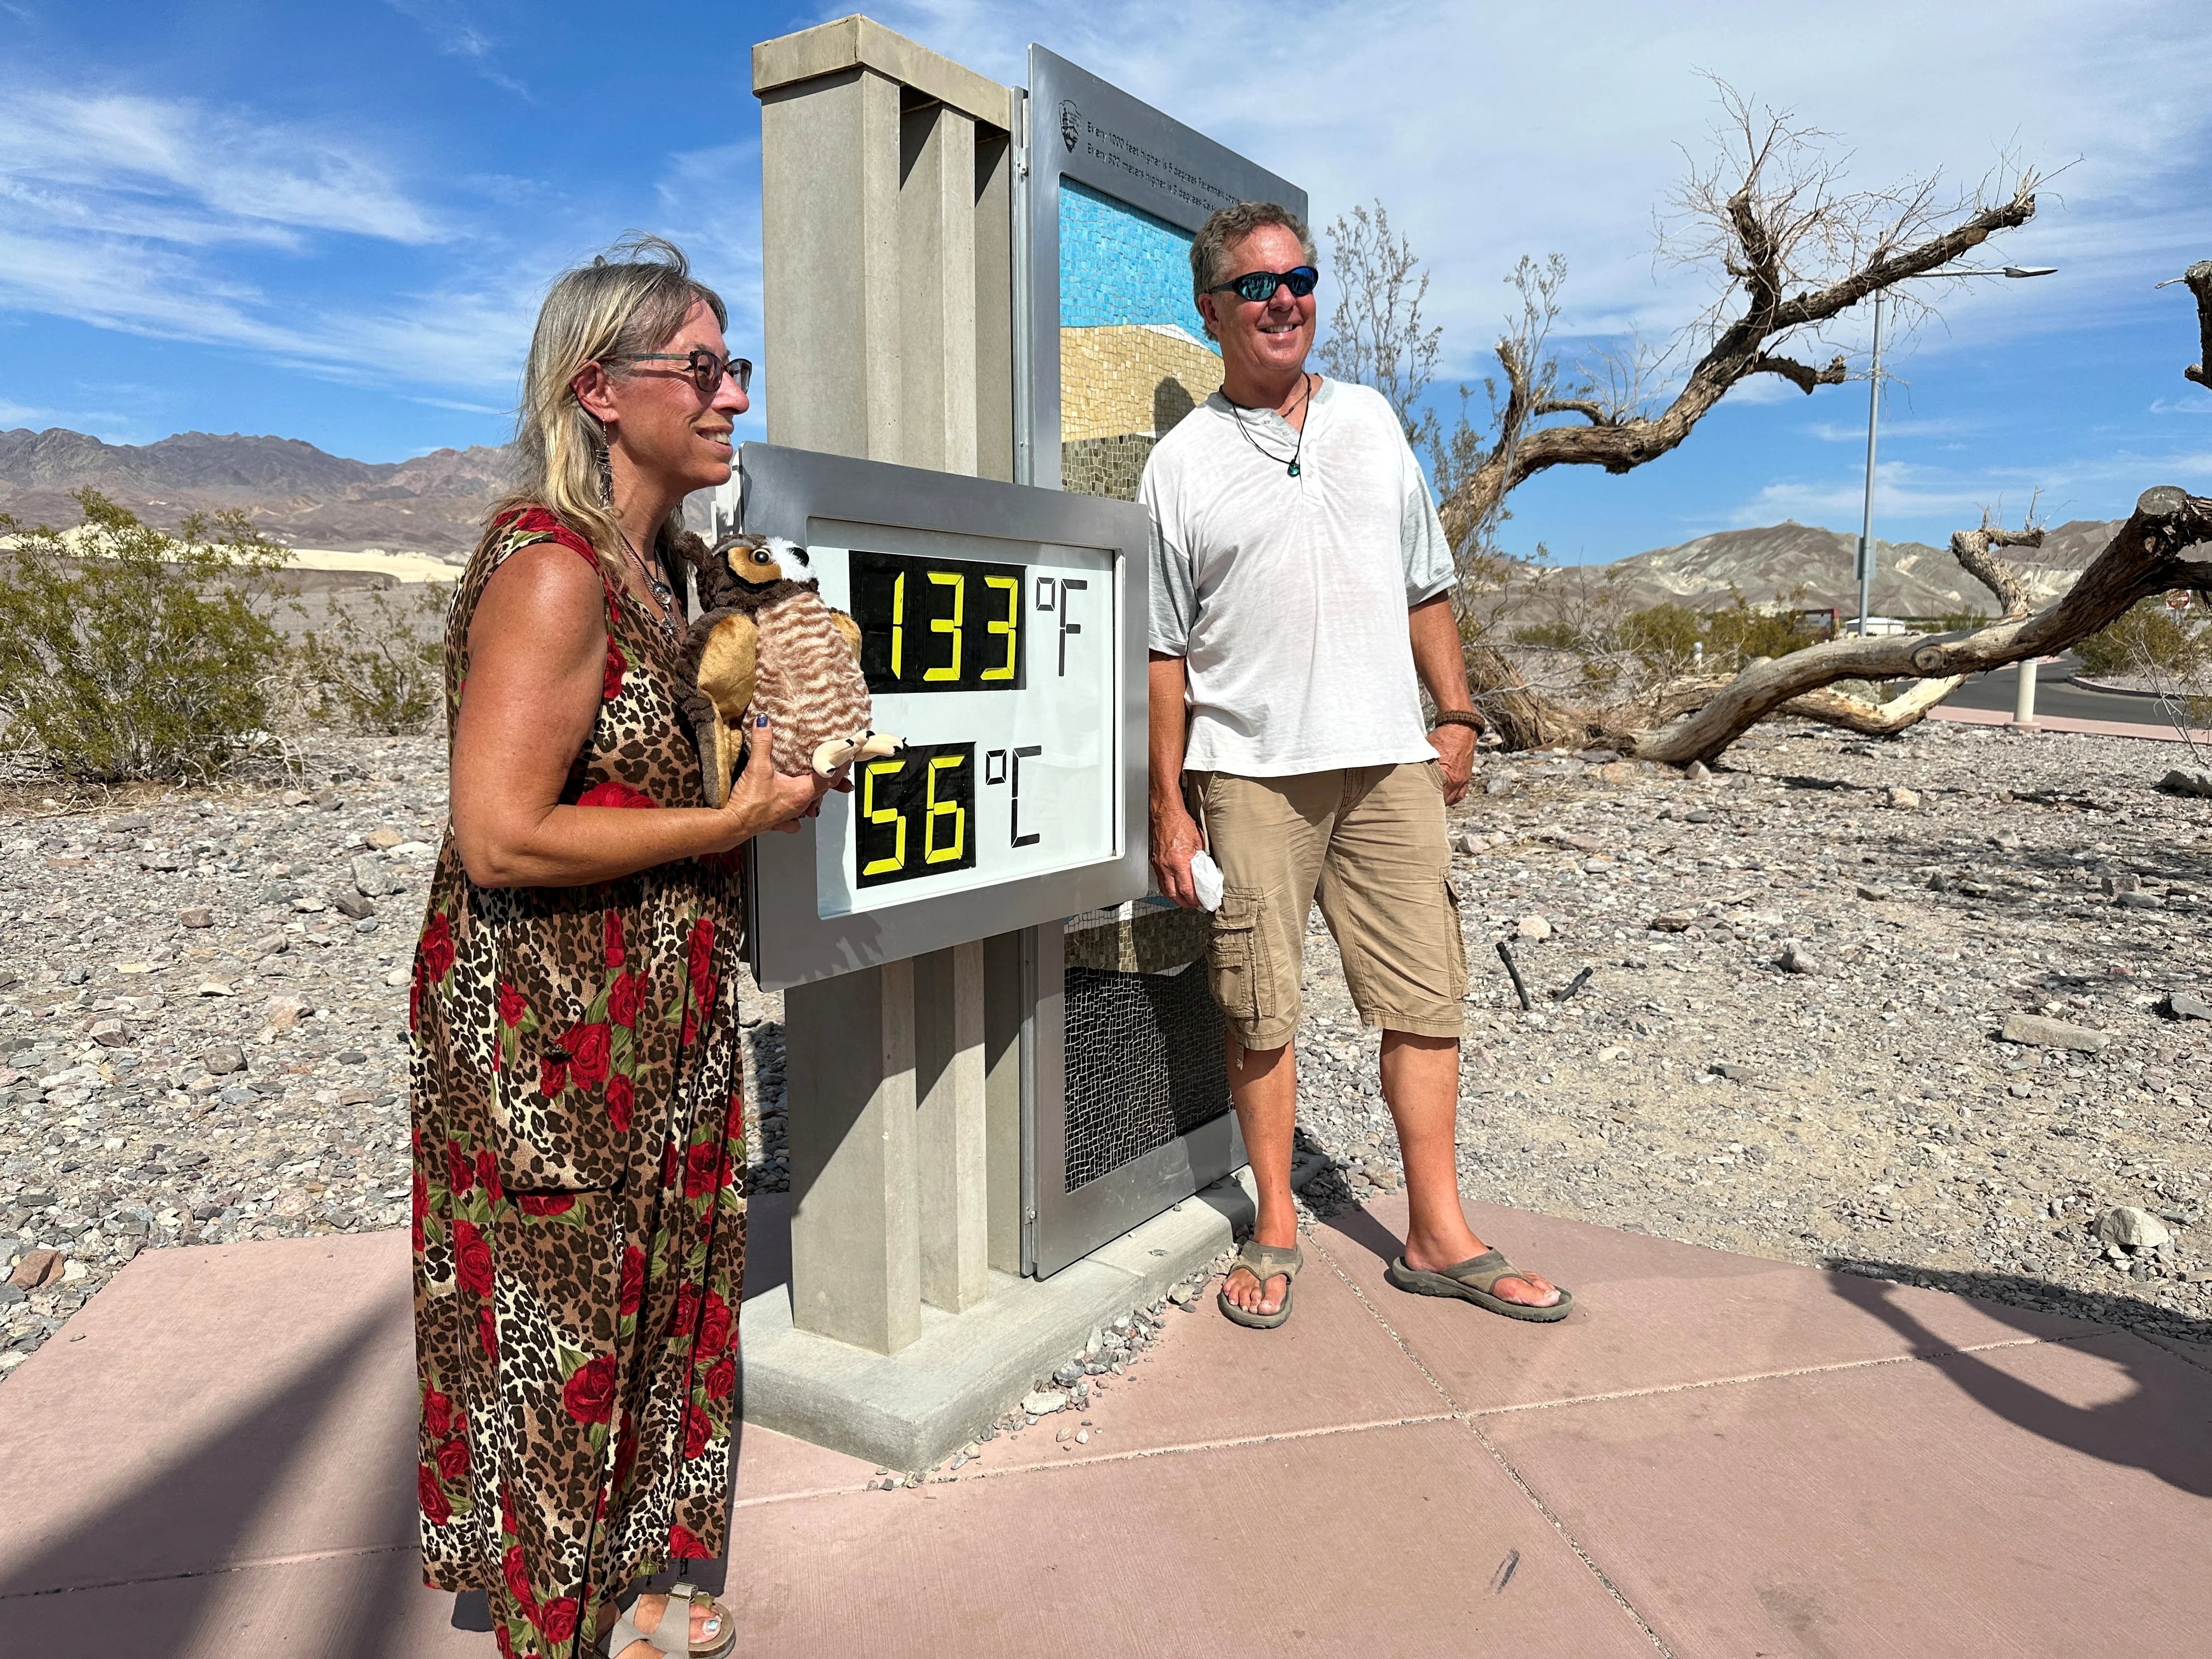 Los turistas posan con una pantalla de temperatura no oficial fuera del Centro de Visitantes de Furnace Creek en Death Valley, California (REUTERS/Jorge Garcia)